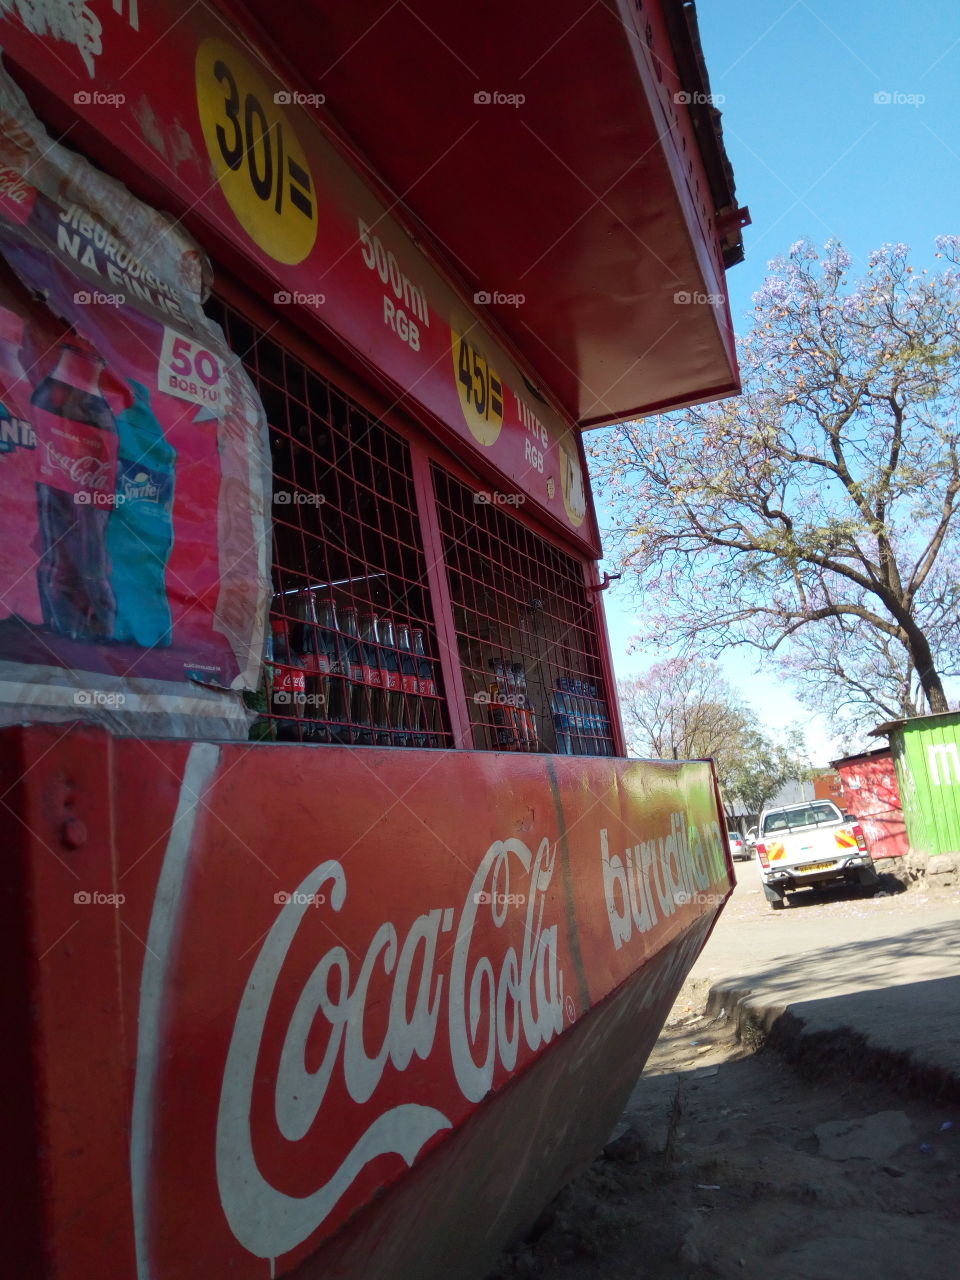 cocacola shop